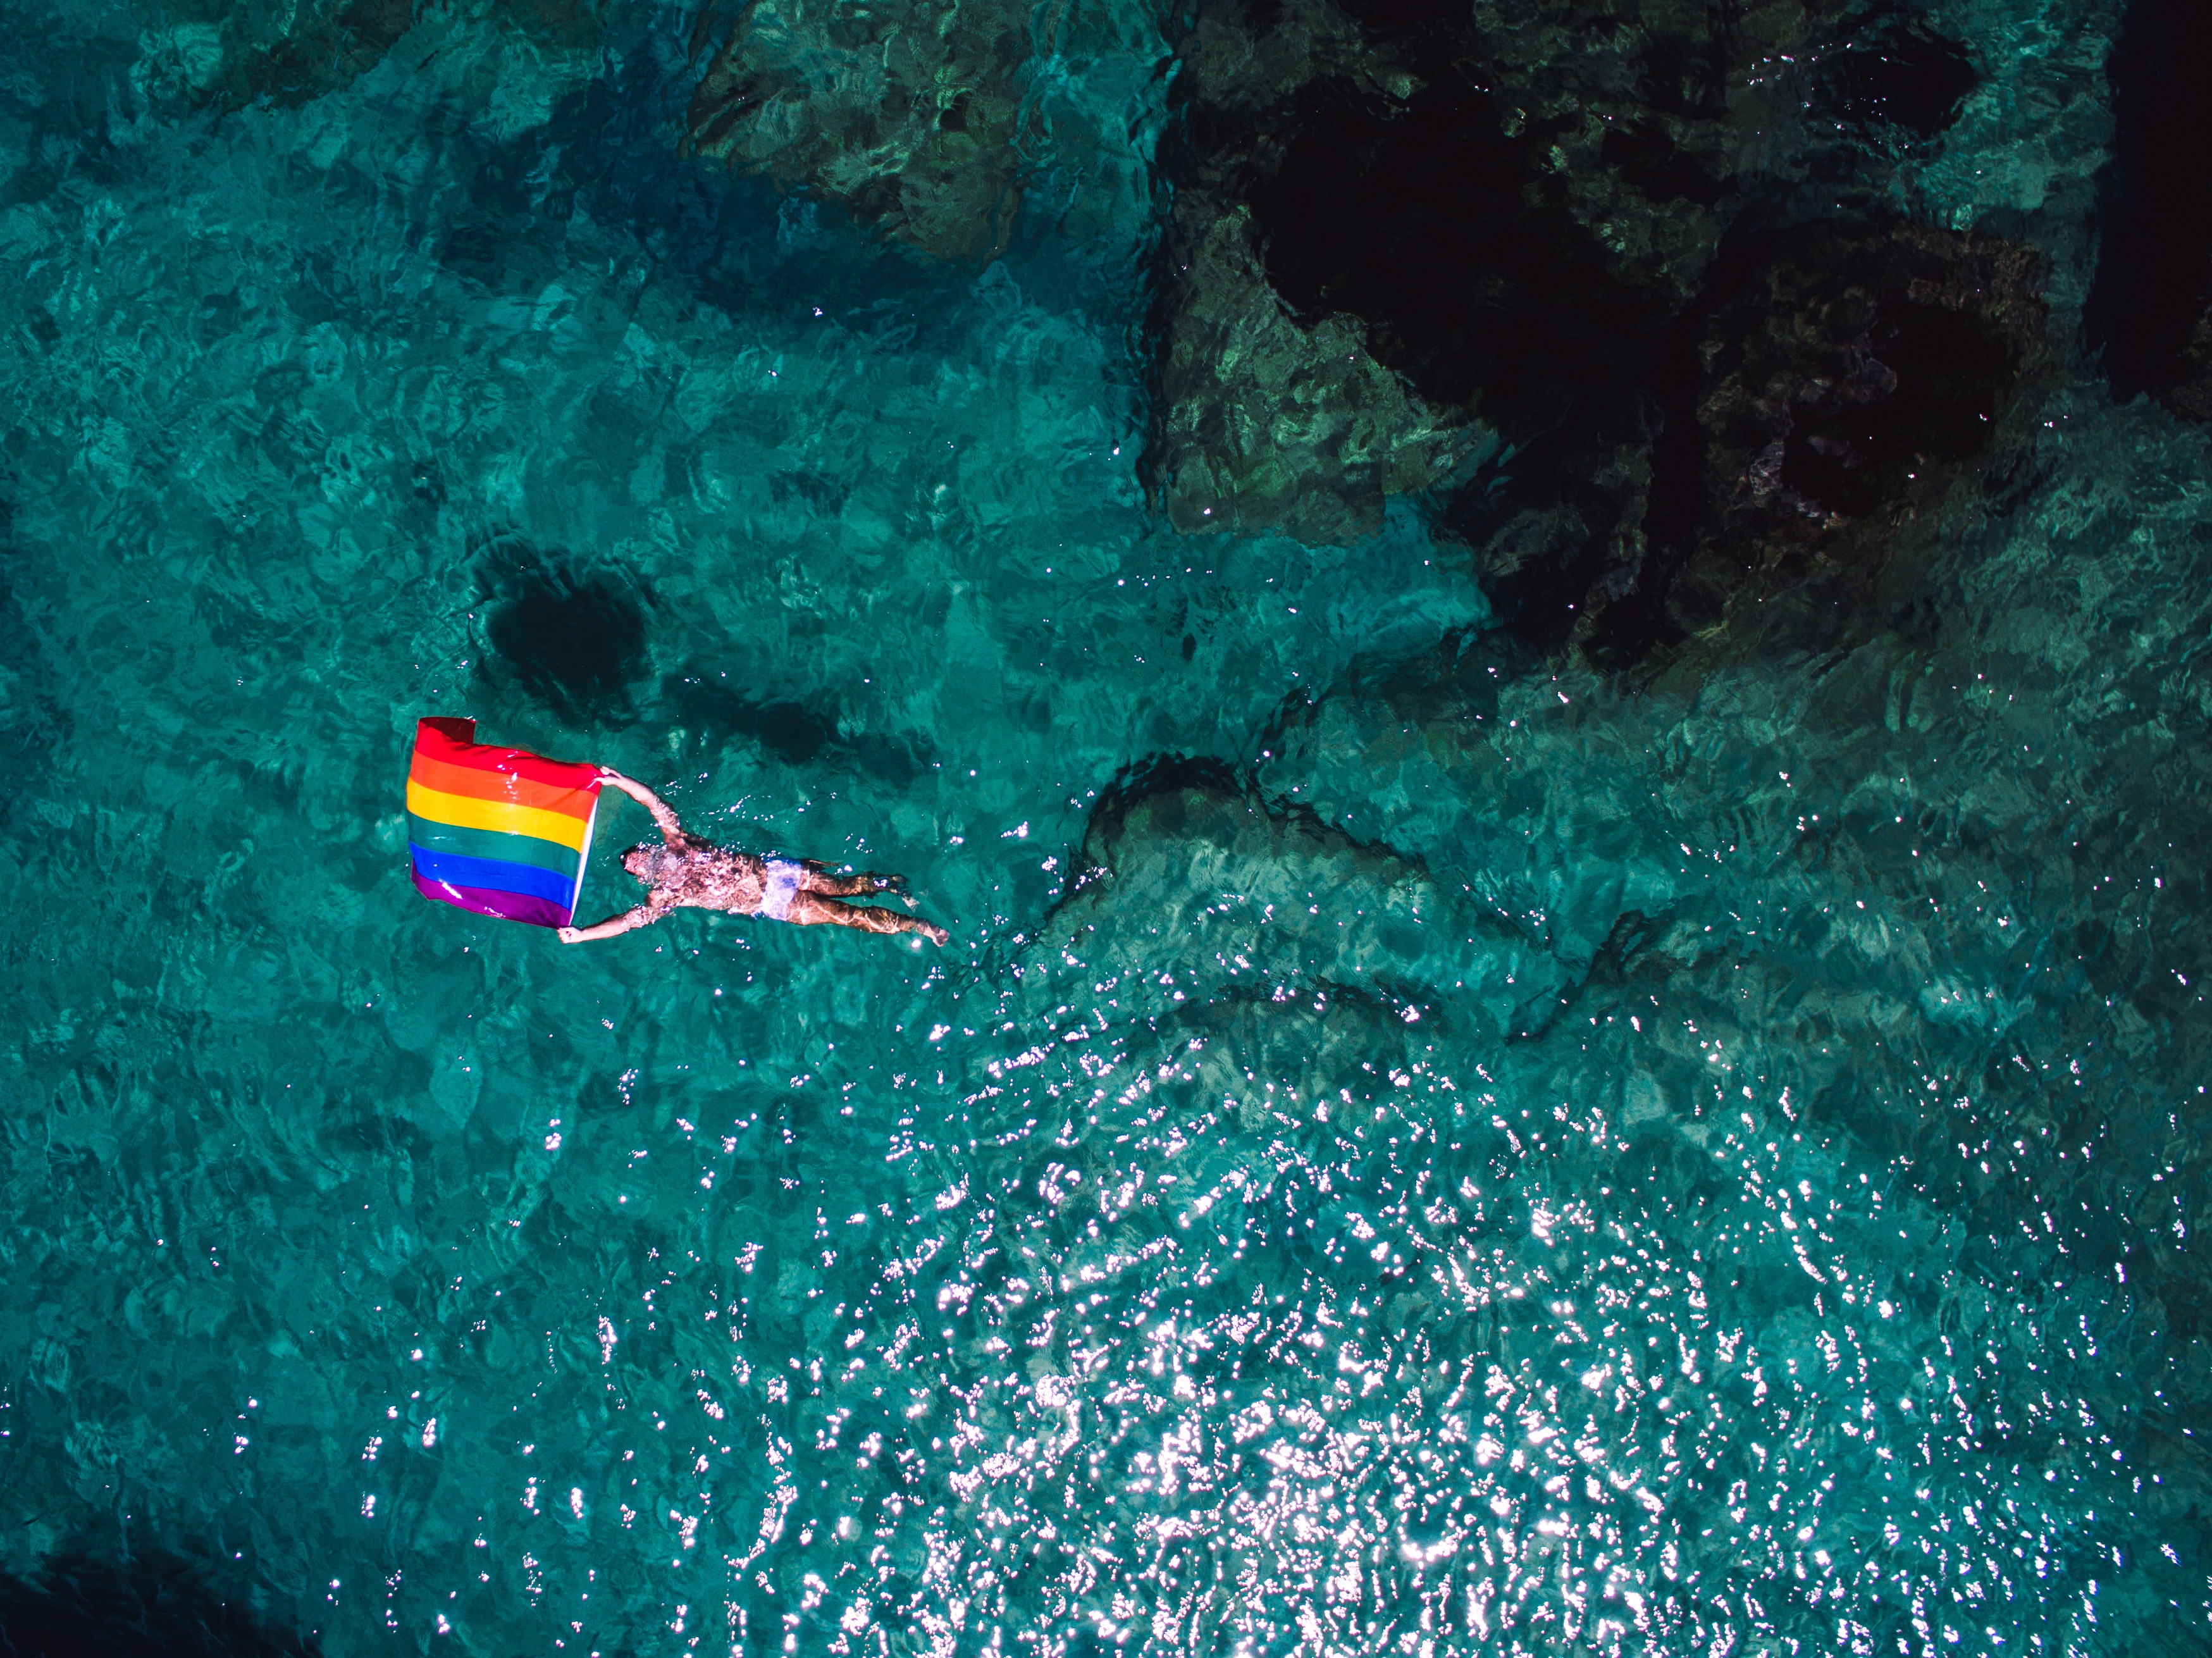 航拍摄影师李奥林支持同性婚姻参展作品之一